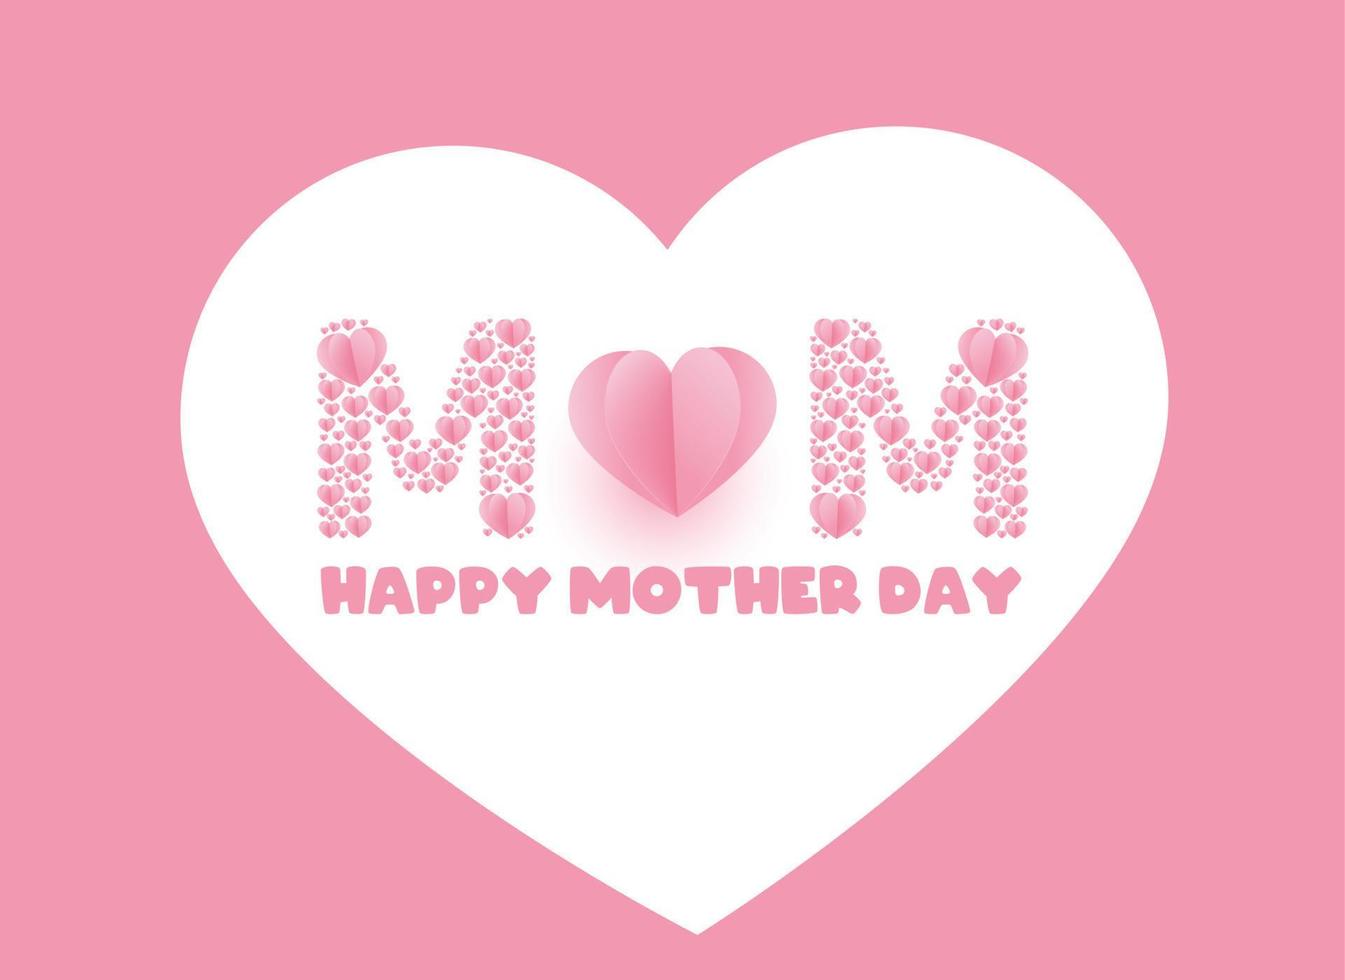 grattis på mors dag hälsningar med en kärlekssymbol som säger rosa mamma vektor